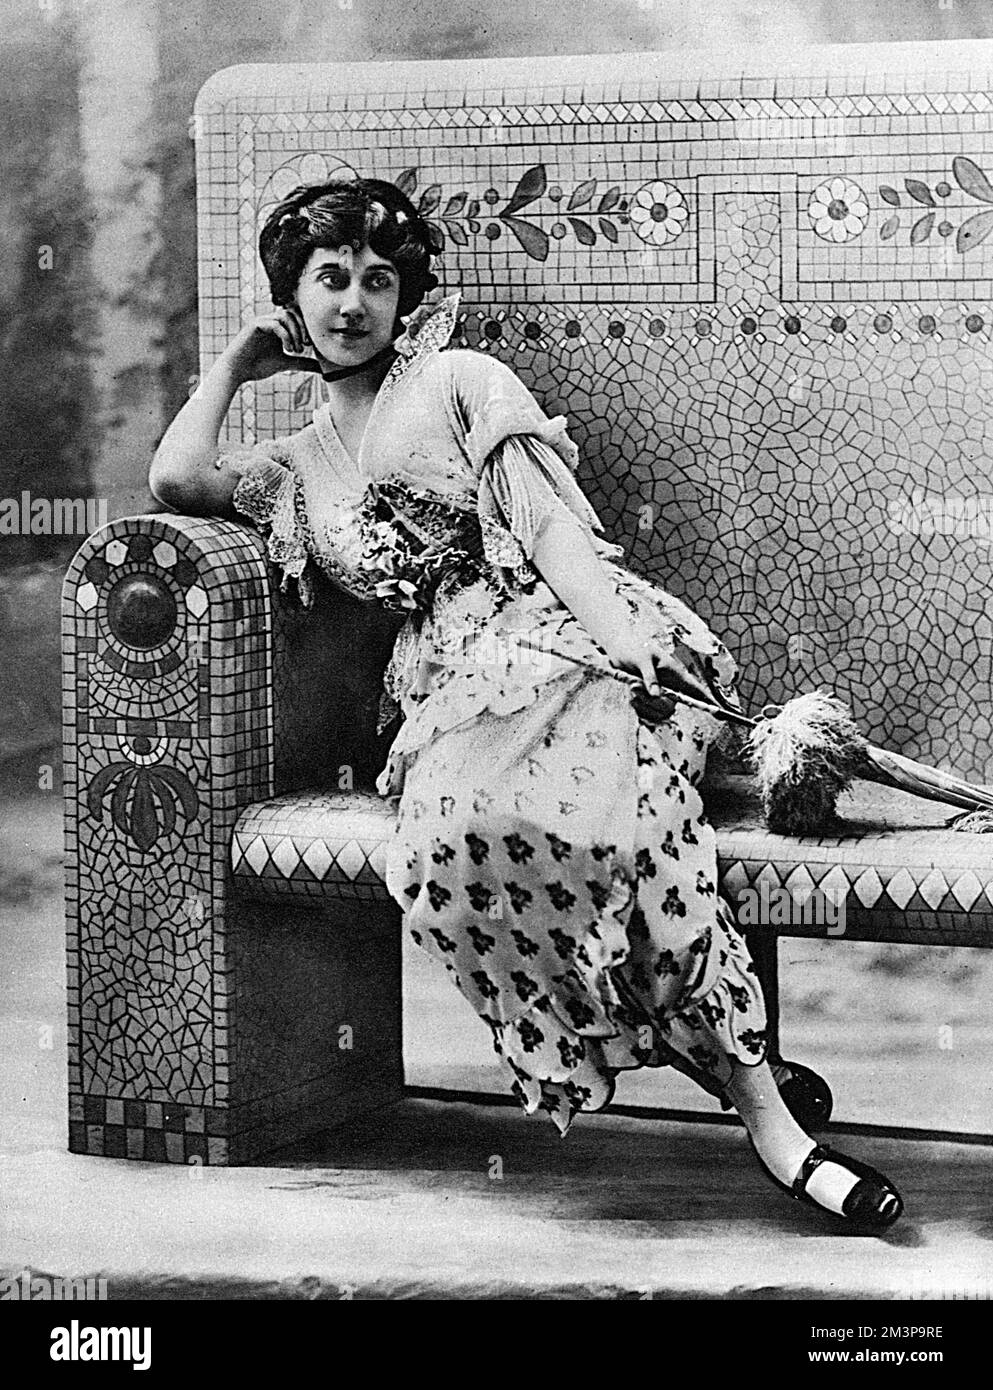 TAMARA KARSAVINA Russian ballet dancer in 1914.      Date: 1914 Stock Photo